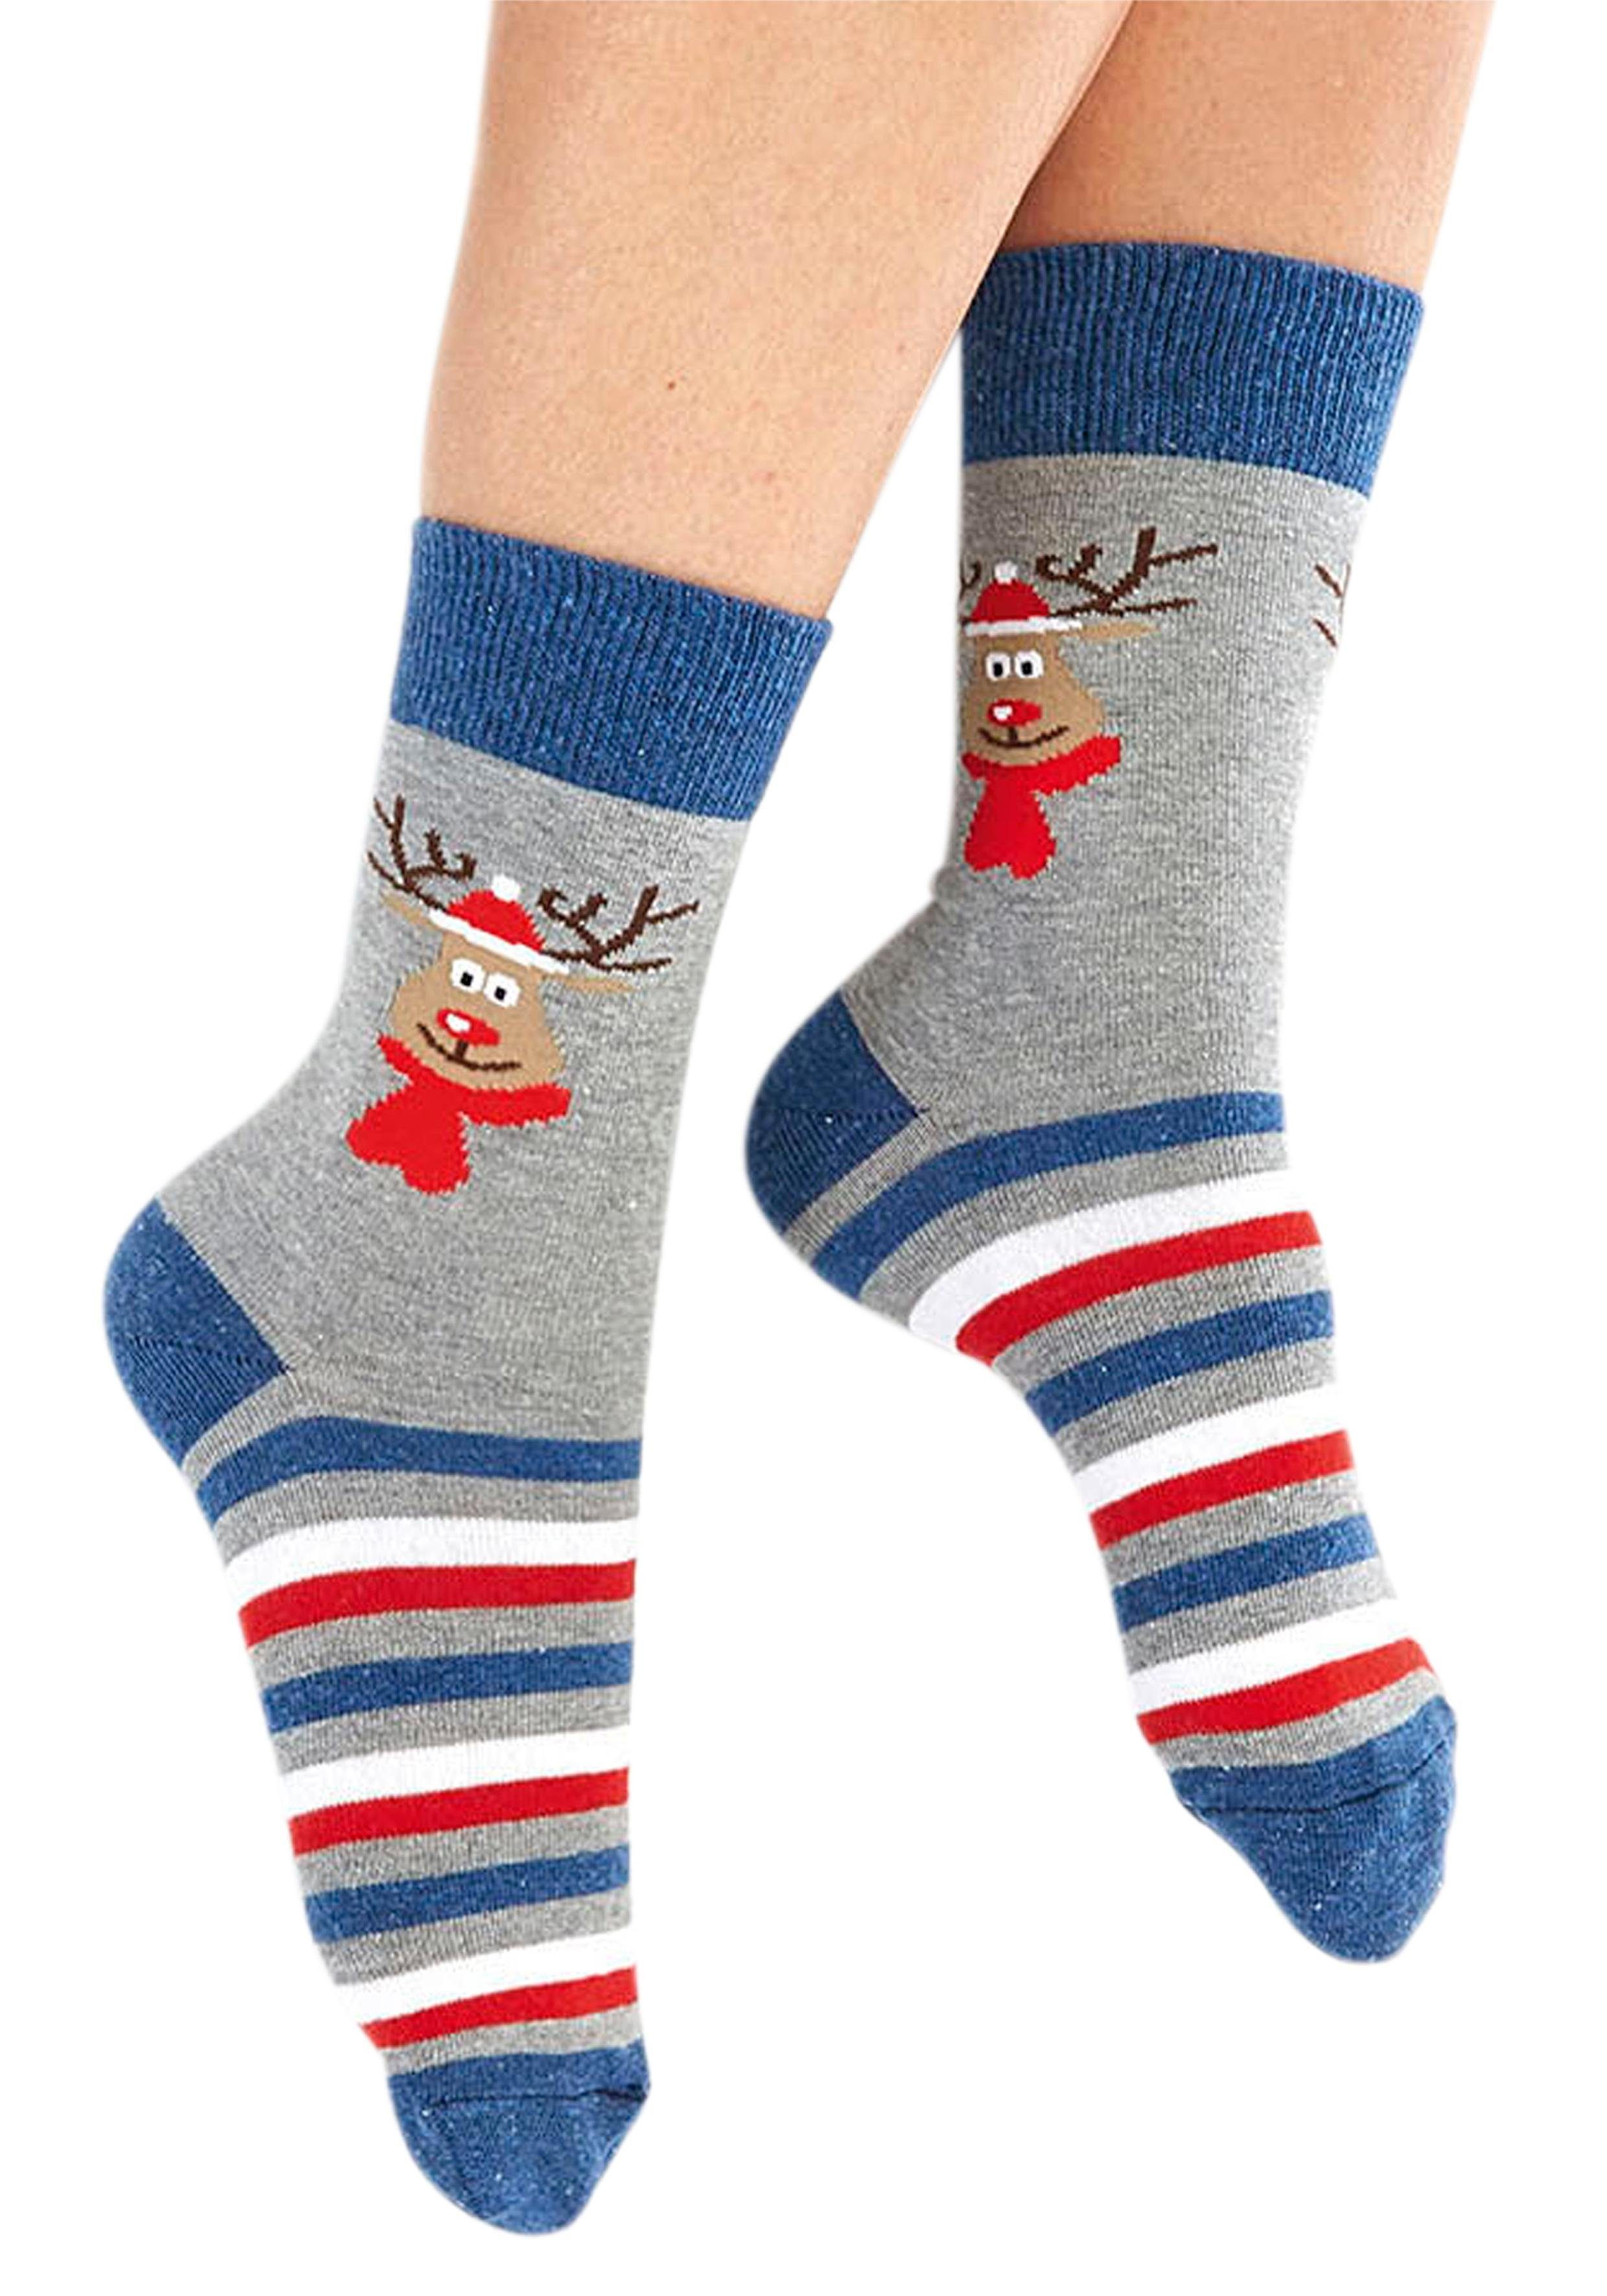 H.I.S Socken mit Weihnachts-Design jeans-grau-rot-gemustert (3-Paar)